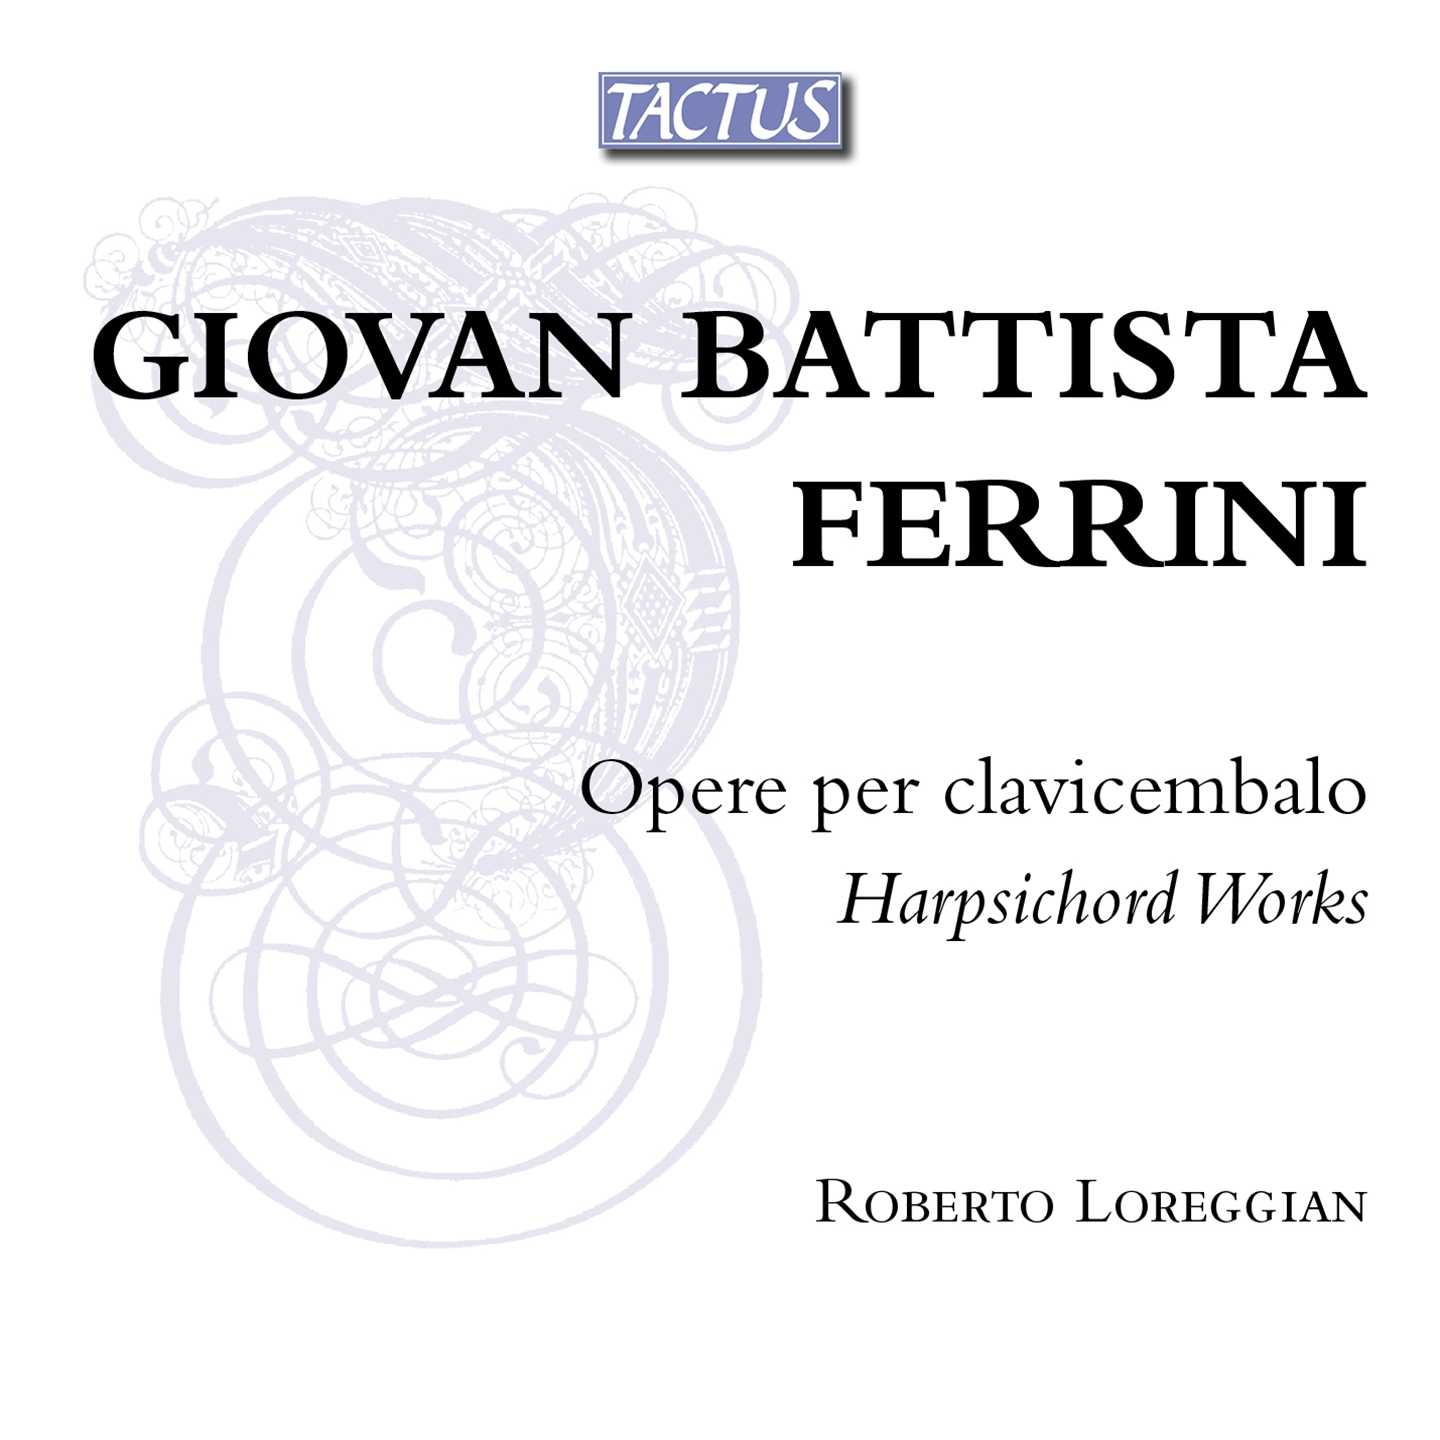 Roberto Loreggian - Ferrini: Harpsichord Works - Picture 1 of 1